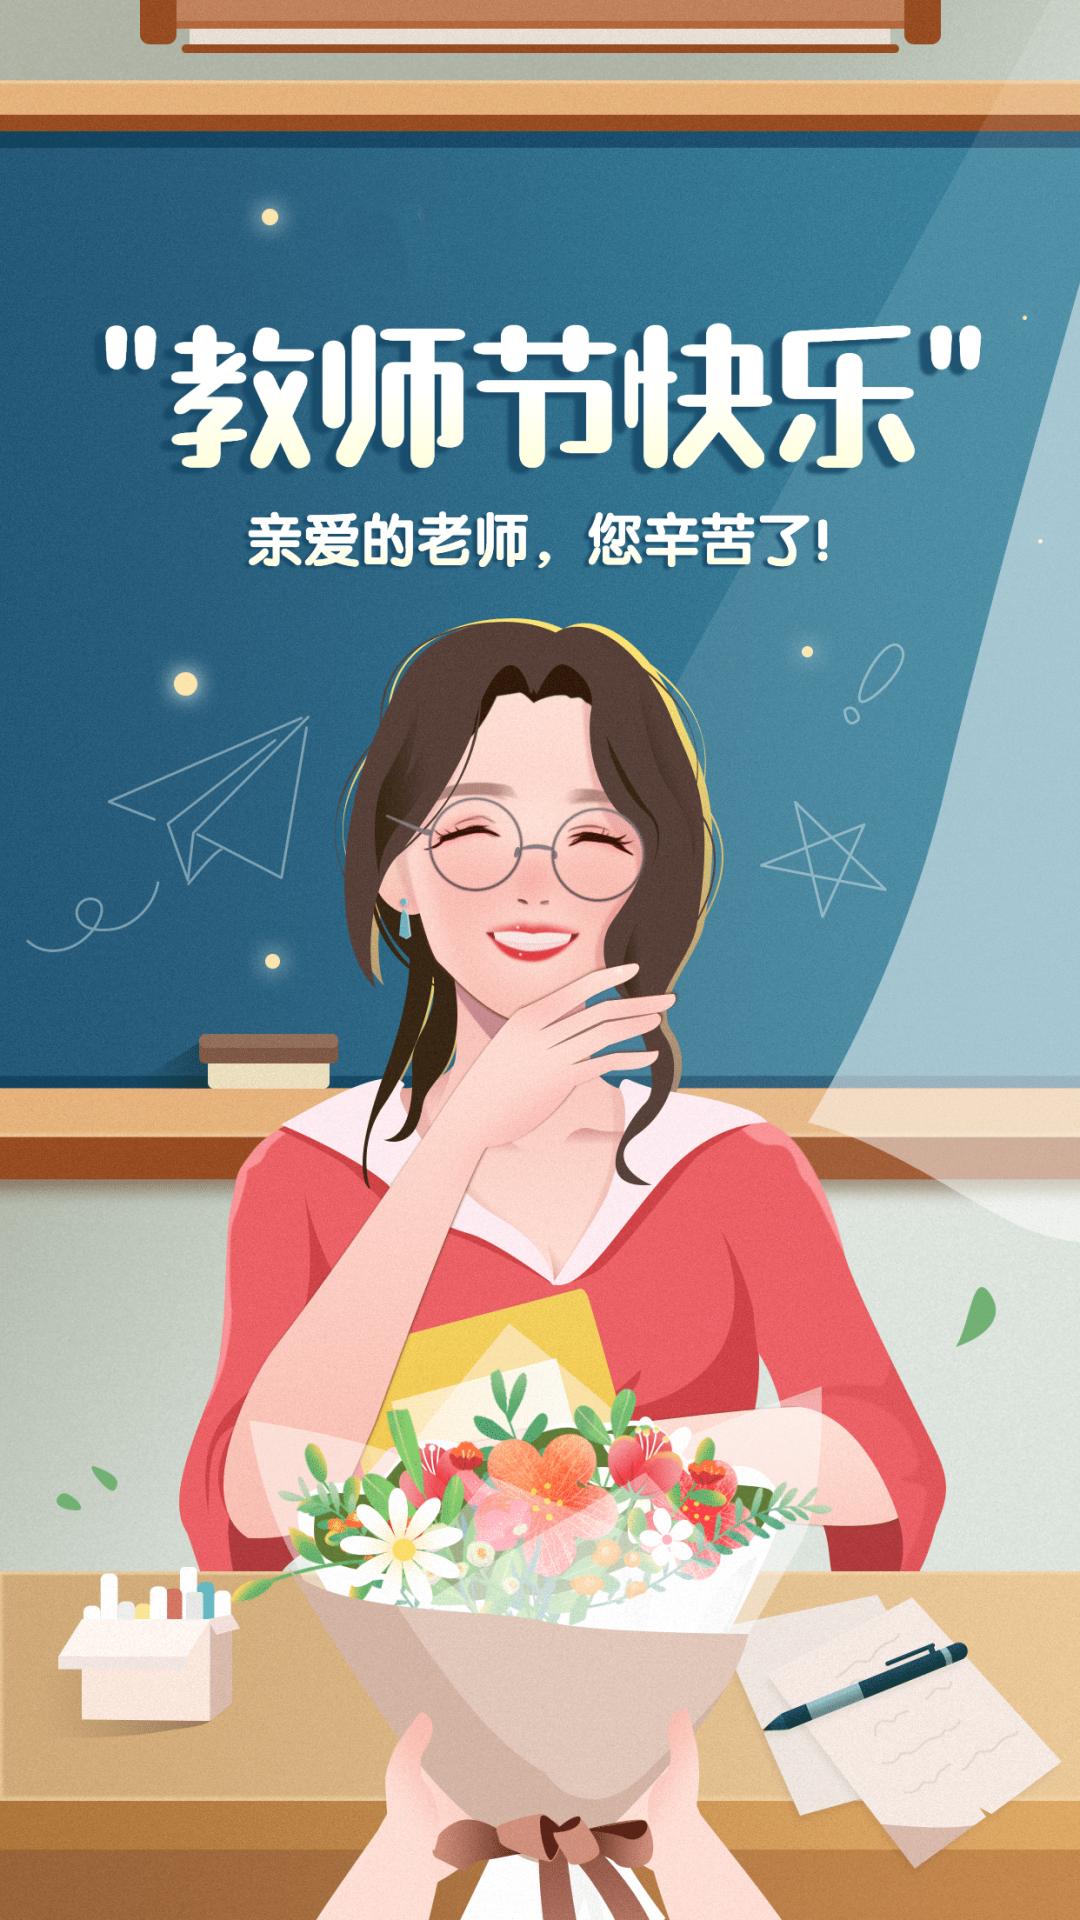 崇州市妇联祝全市教师节日快乐